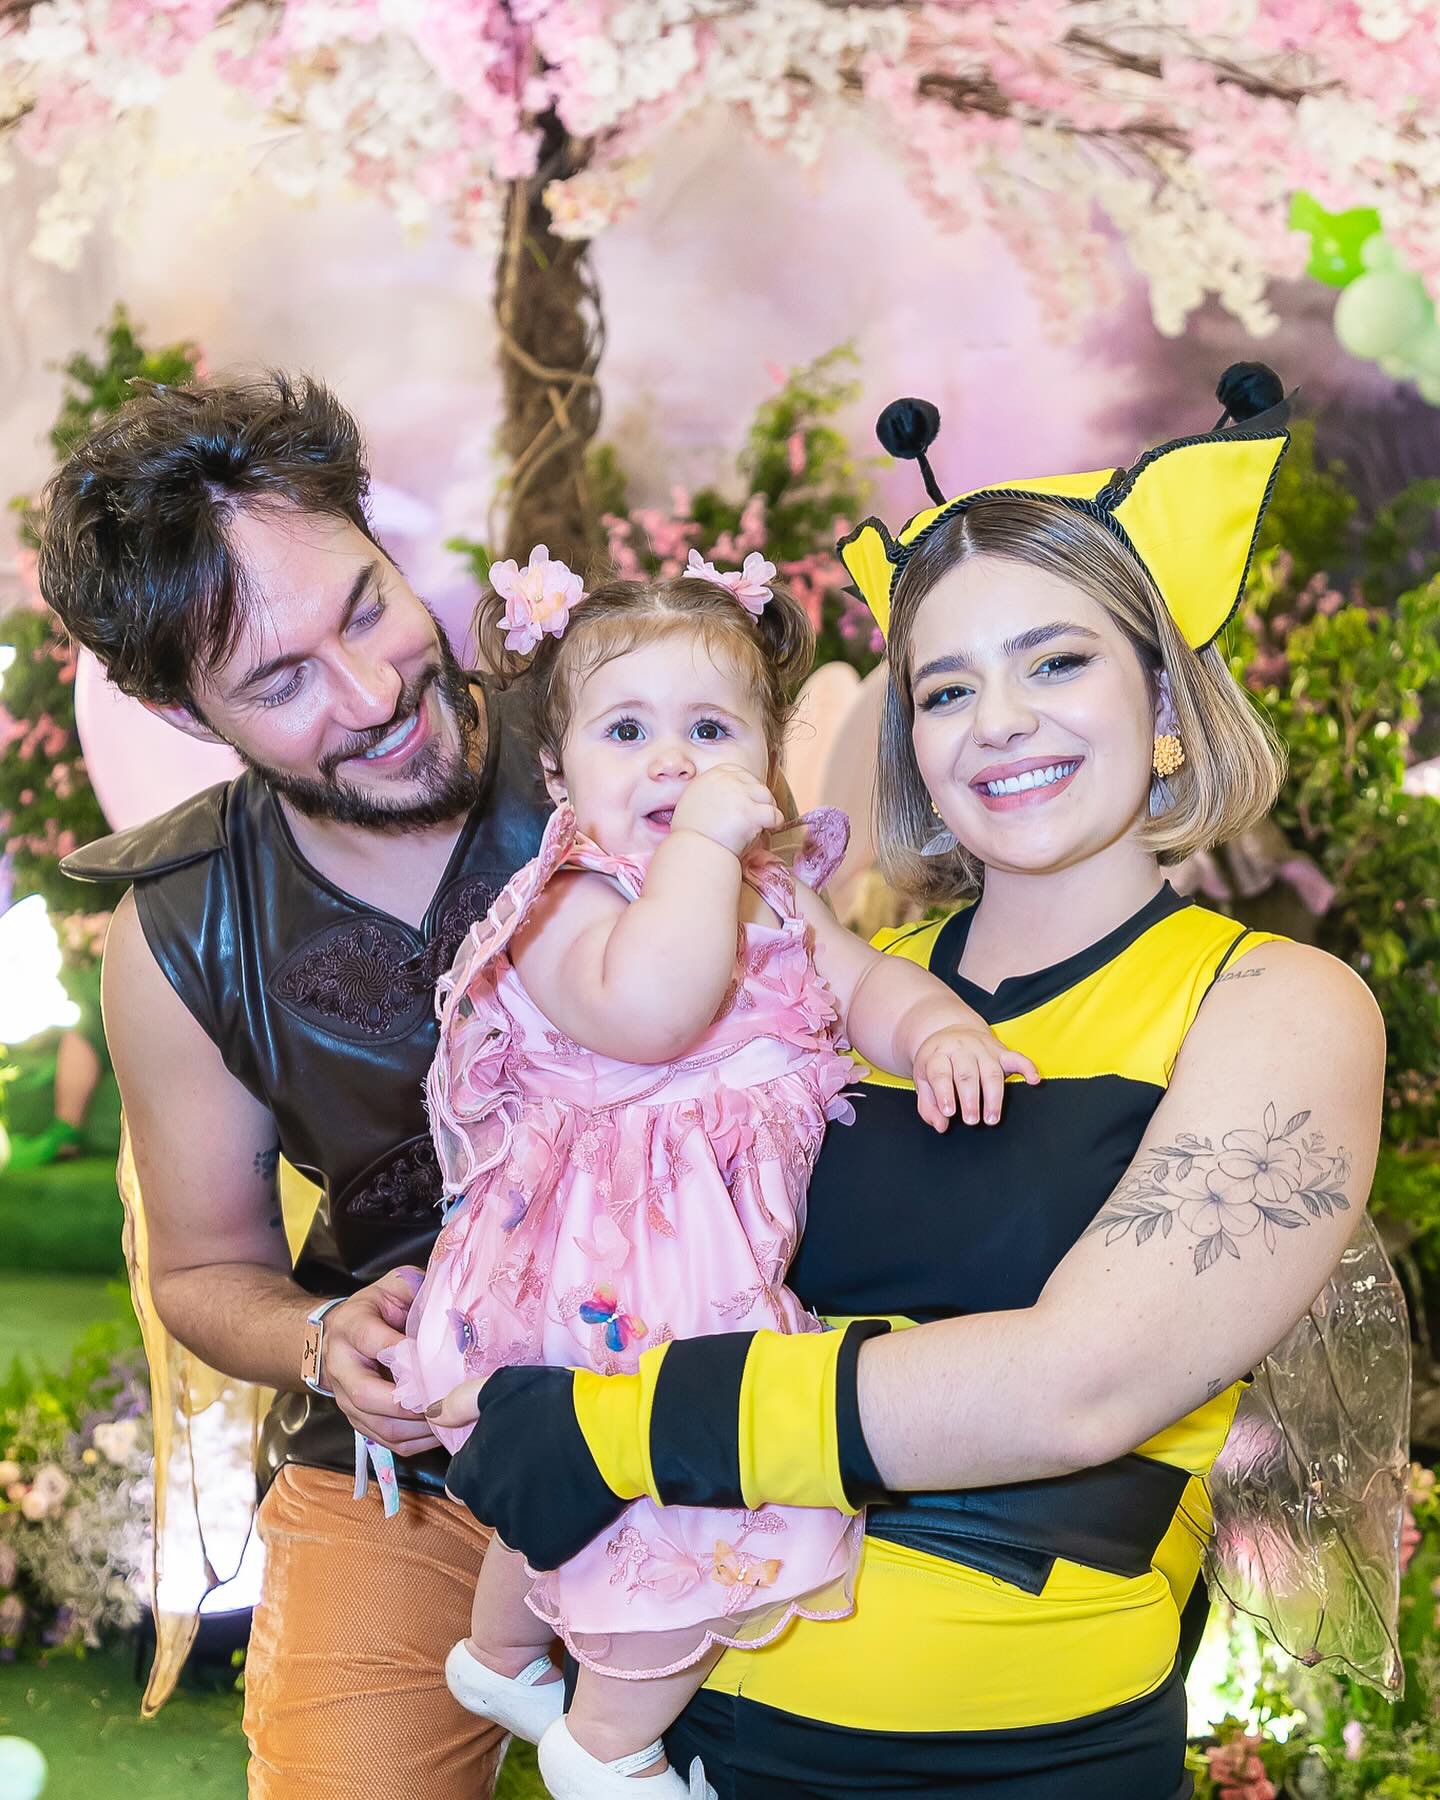 A aniversariante se transformou em uma borboleta para celebrar ao lado dos pais. A influenciadora entrou no clima como abelha e o influenciador como vagalume. Reprodução/Instagram